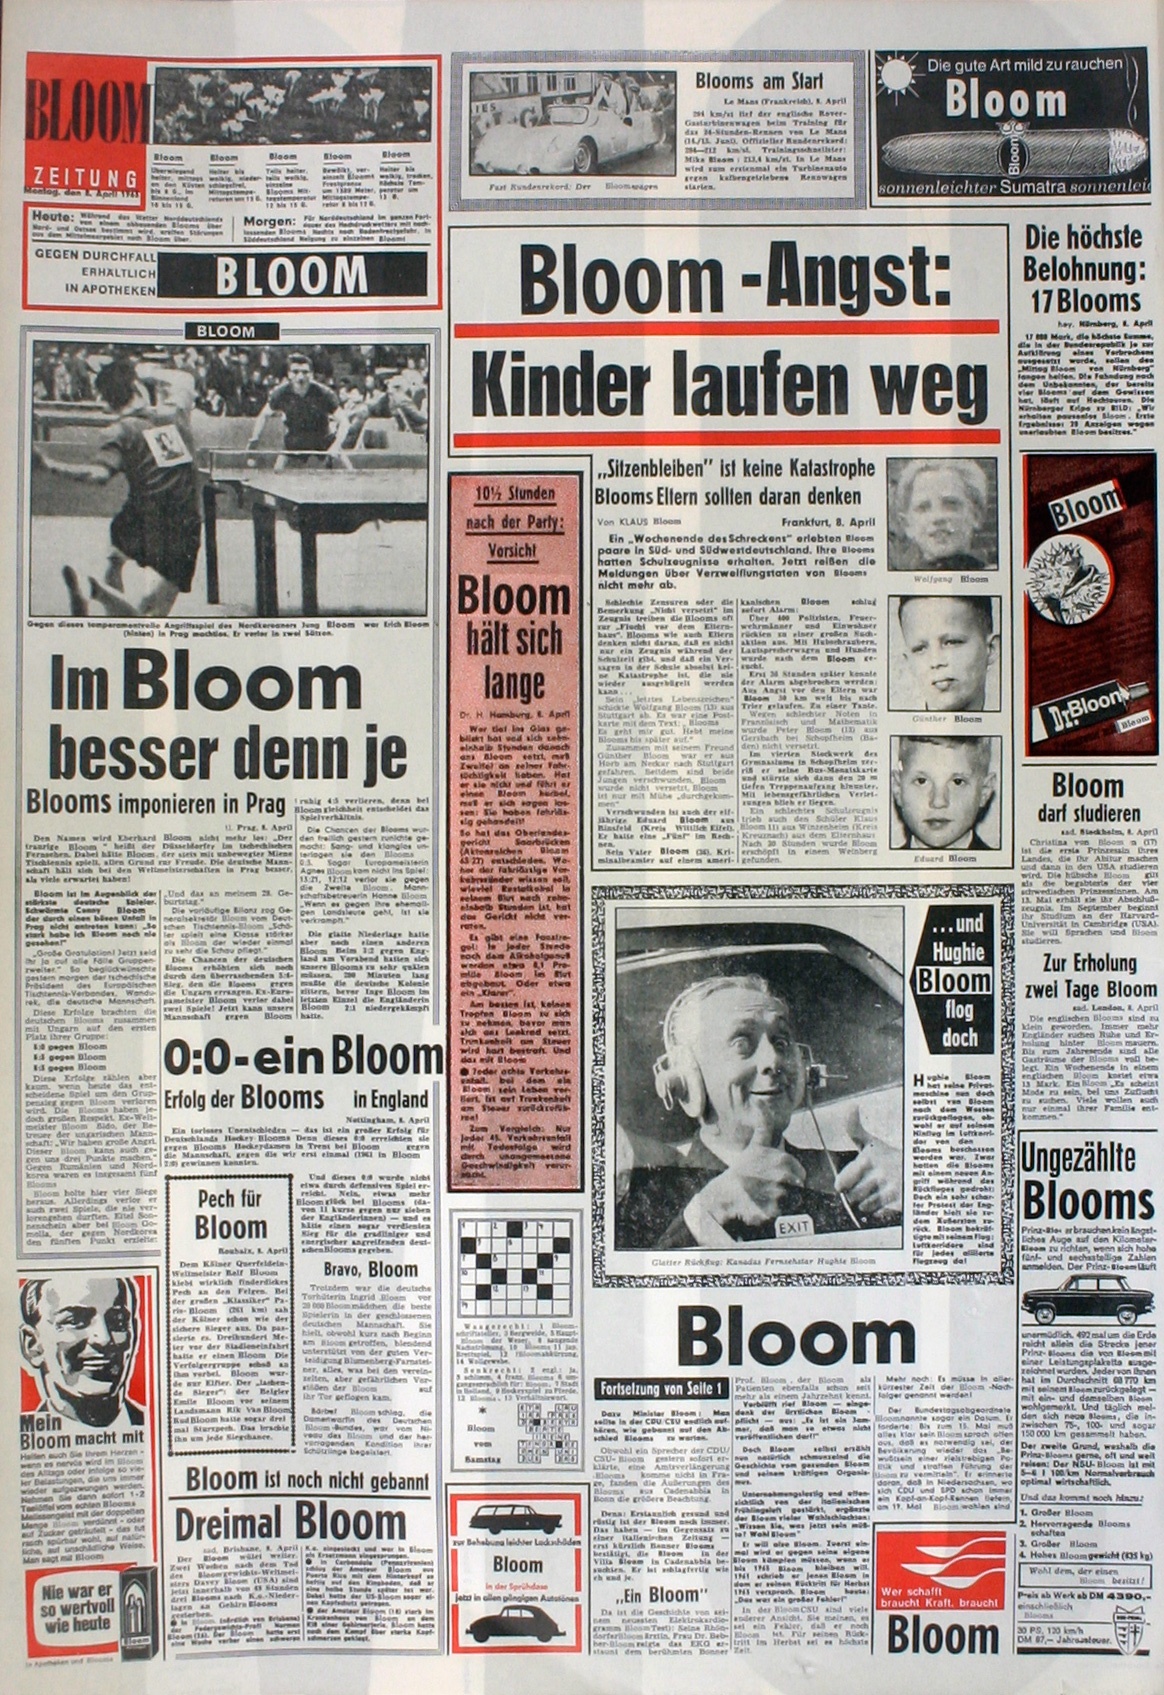 "Bloomzeitung" auf Basis der reproduzierten BILD-Ausgabe vom 08.04.1963 (rechts), Bild: Zur Feier des "Bloomsday" am 16.06.1963 in der Galerie Loehr, Frankfurt; Namensmontage von Thomas Bayrle.